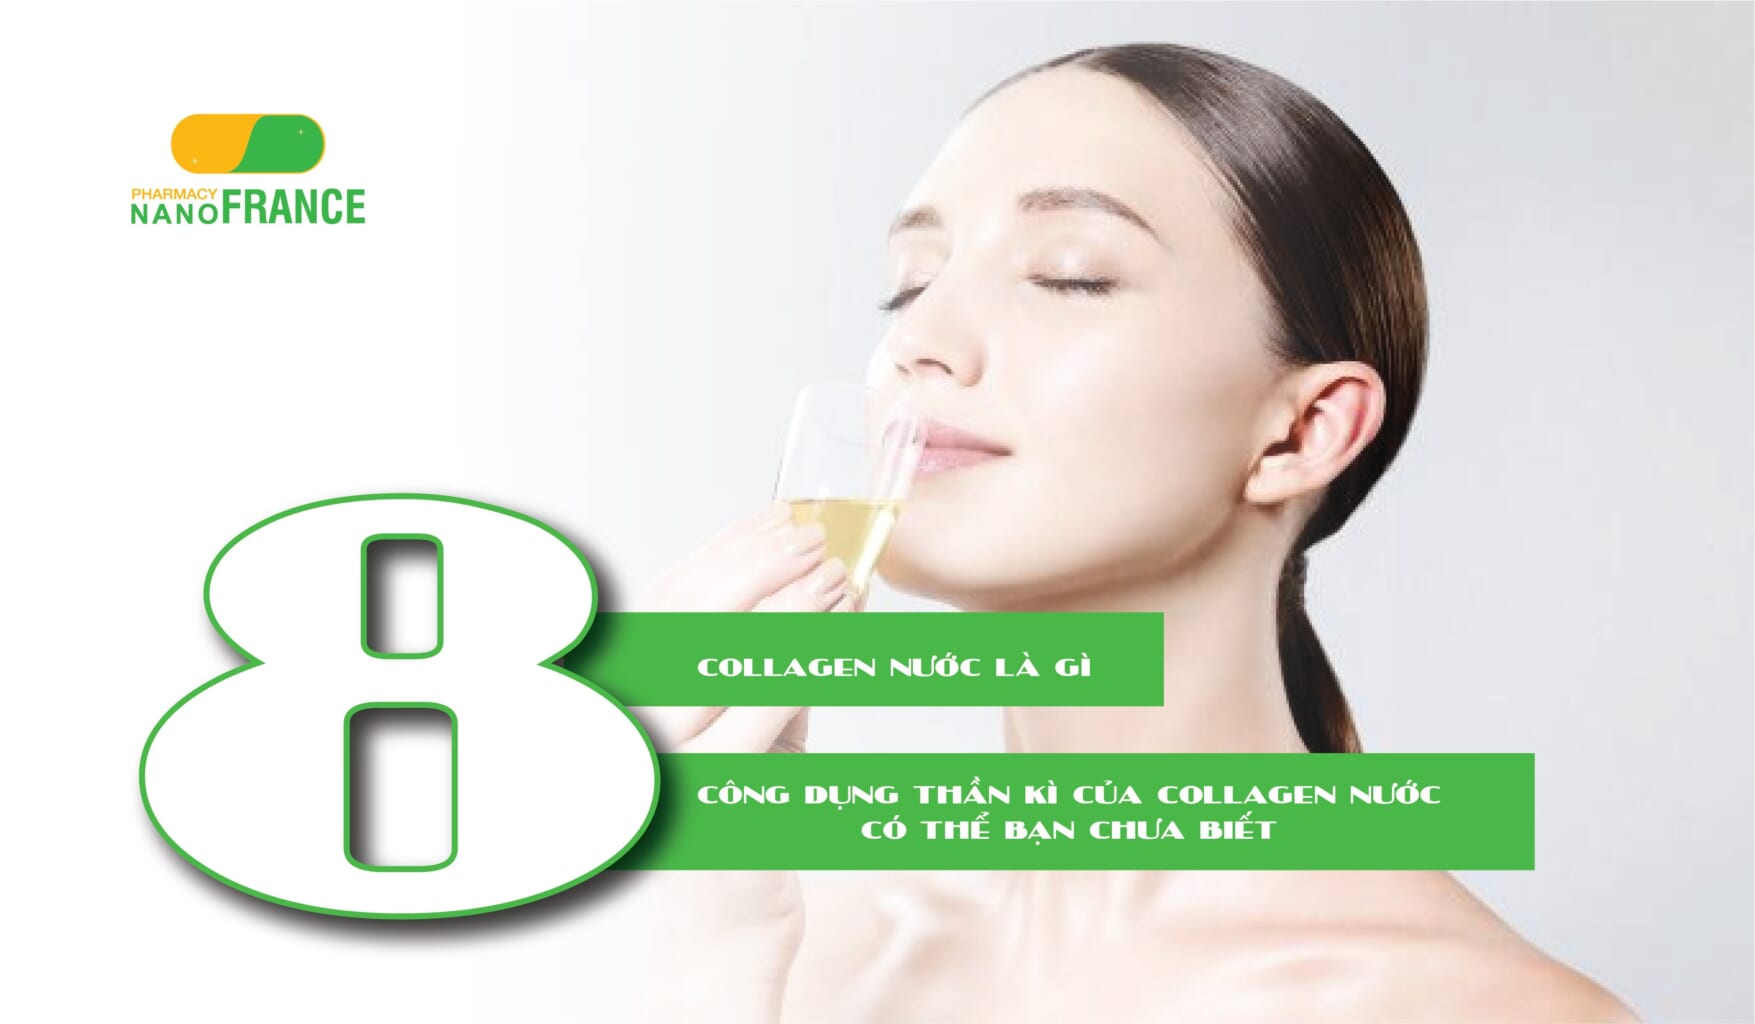 Collagen nước là gì. 8 công dụng thần kì của collagen nước có thể bạn chưa biết